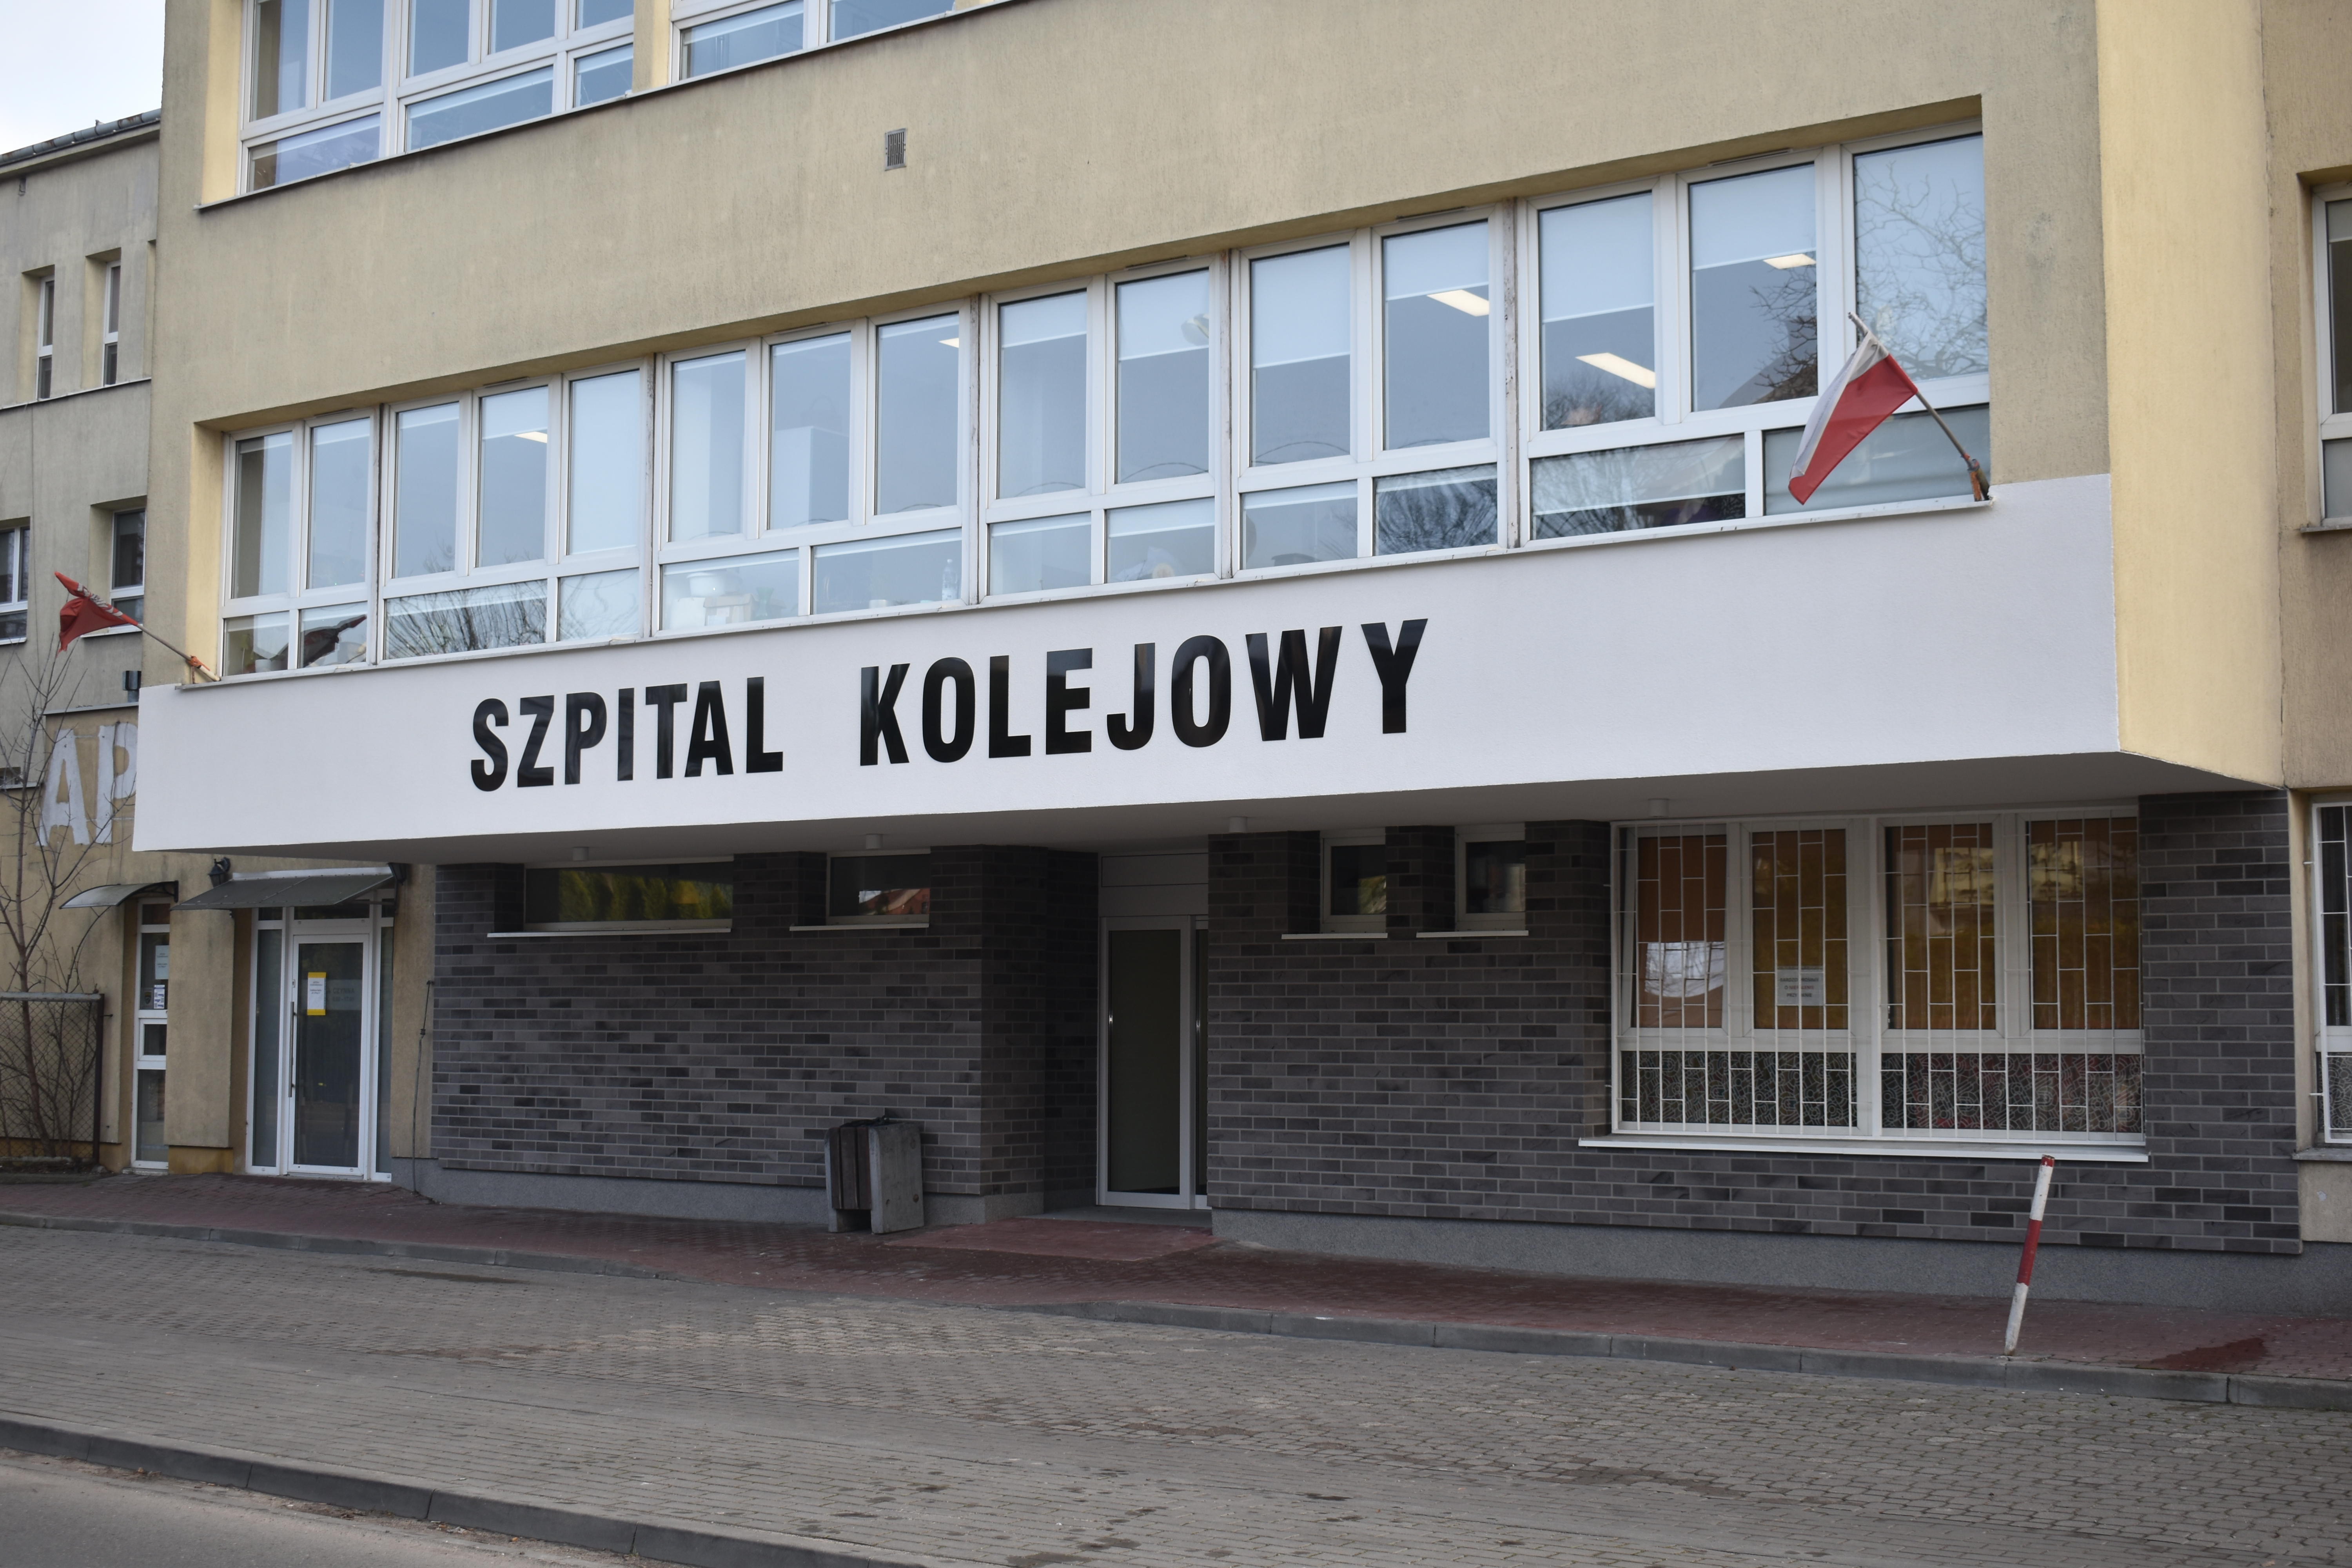 Przebudowa wejścia głównego do Szpitala Kolejowego – w związku z Covid-19